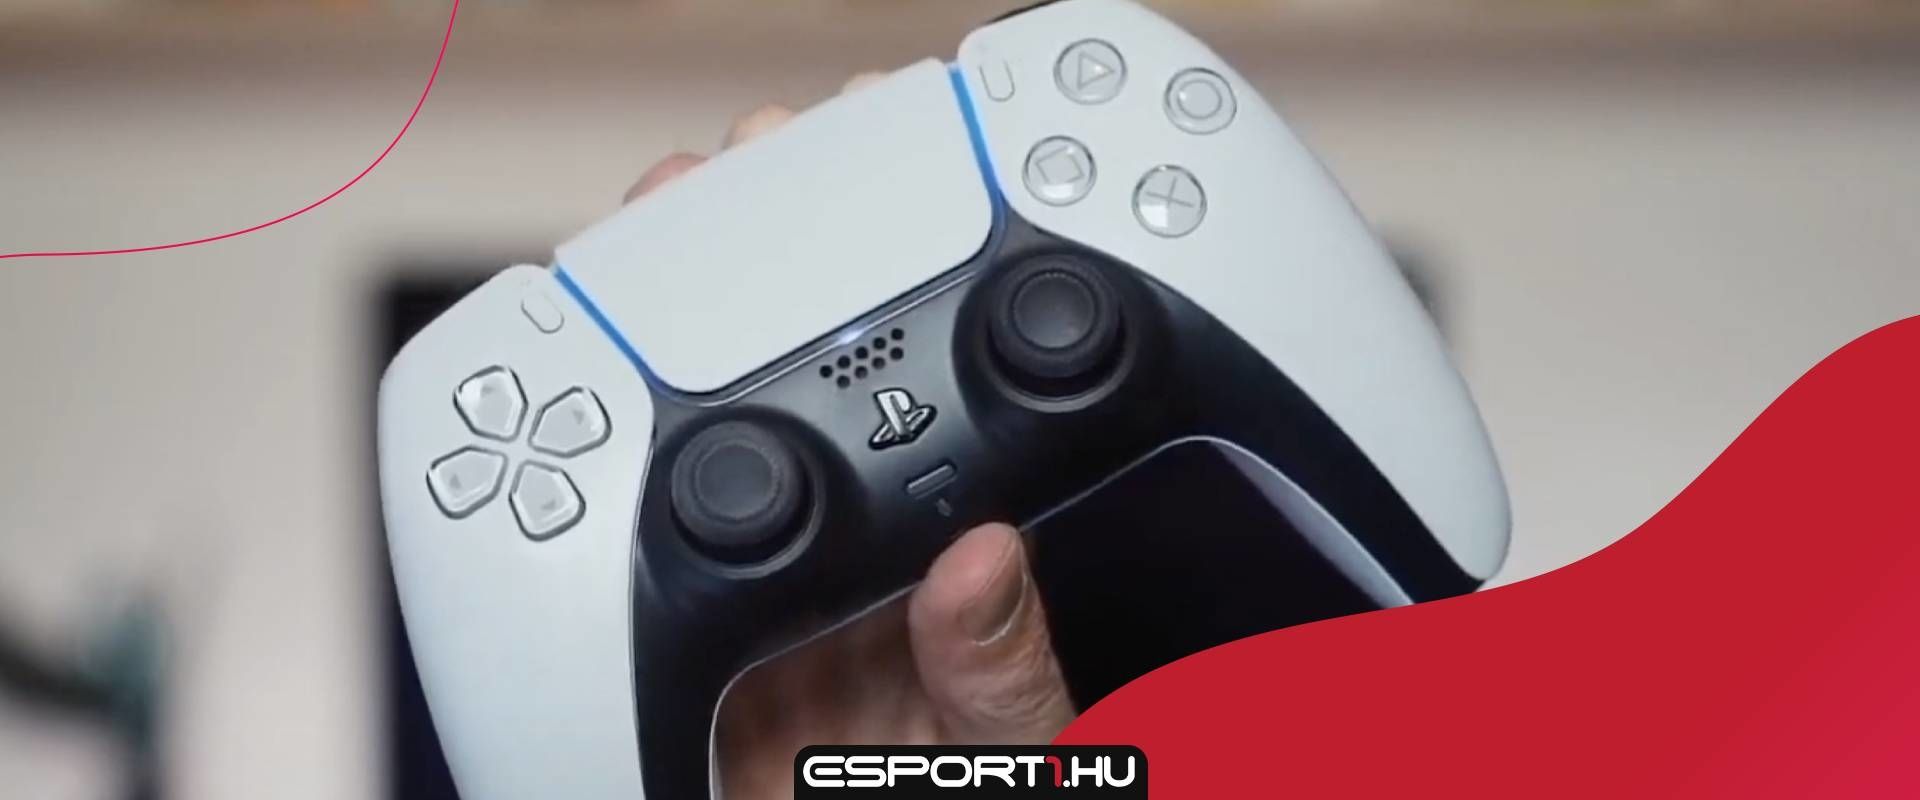 Egy játékban képes lesz a PS5 kontroller a játékosok fáradtságát érzékeltetni?!